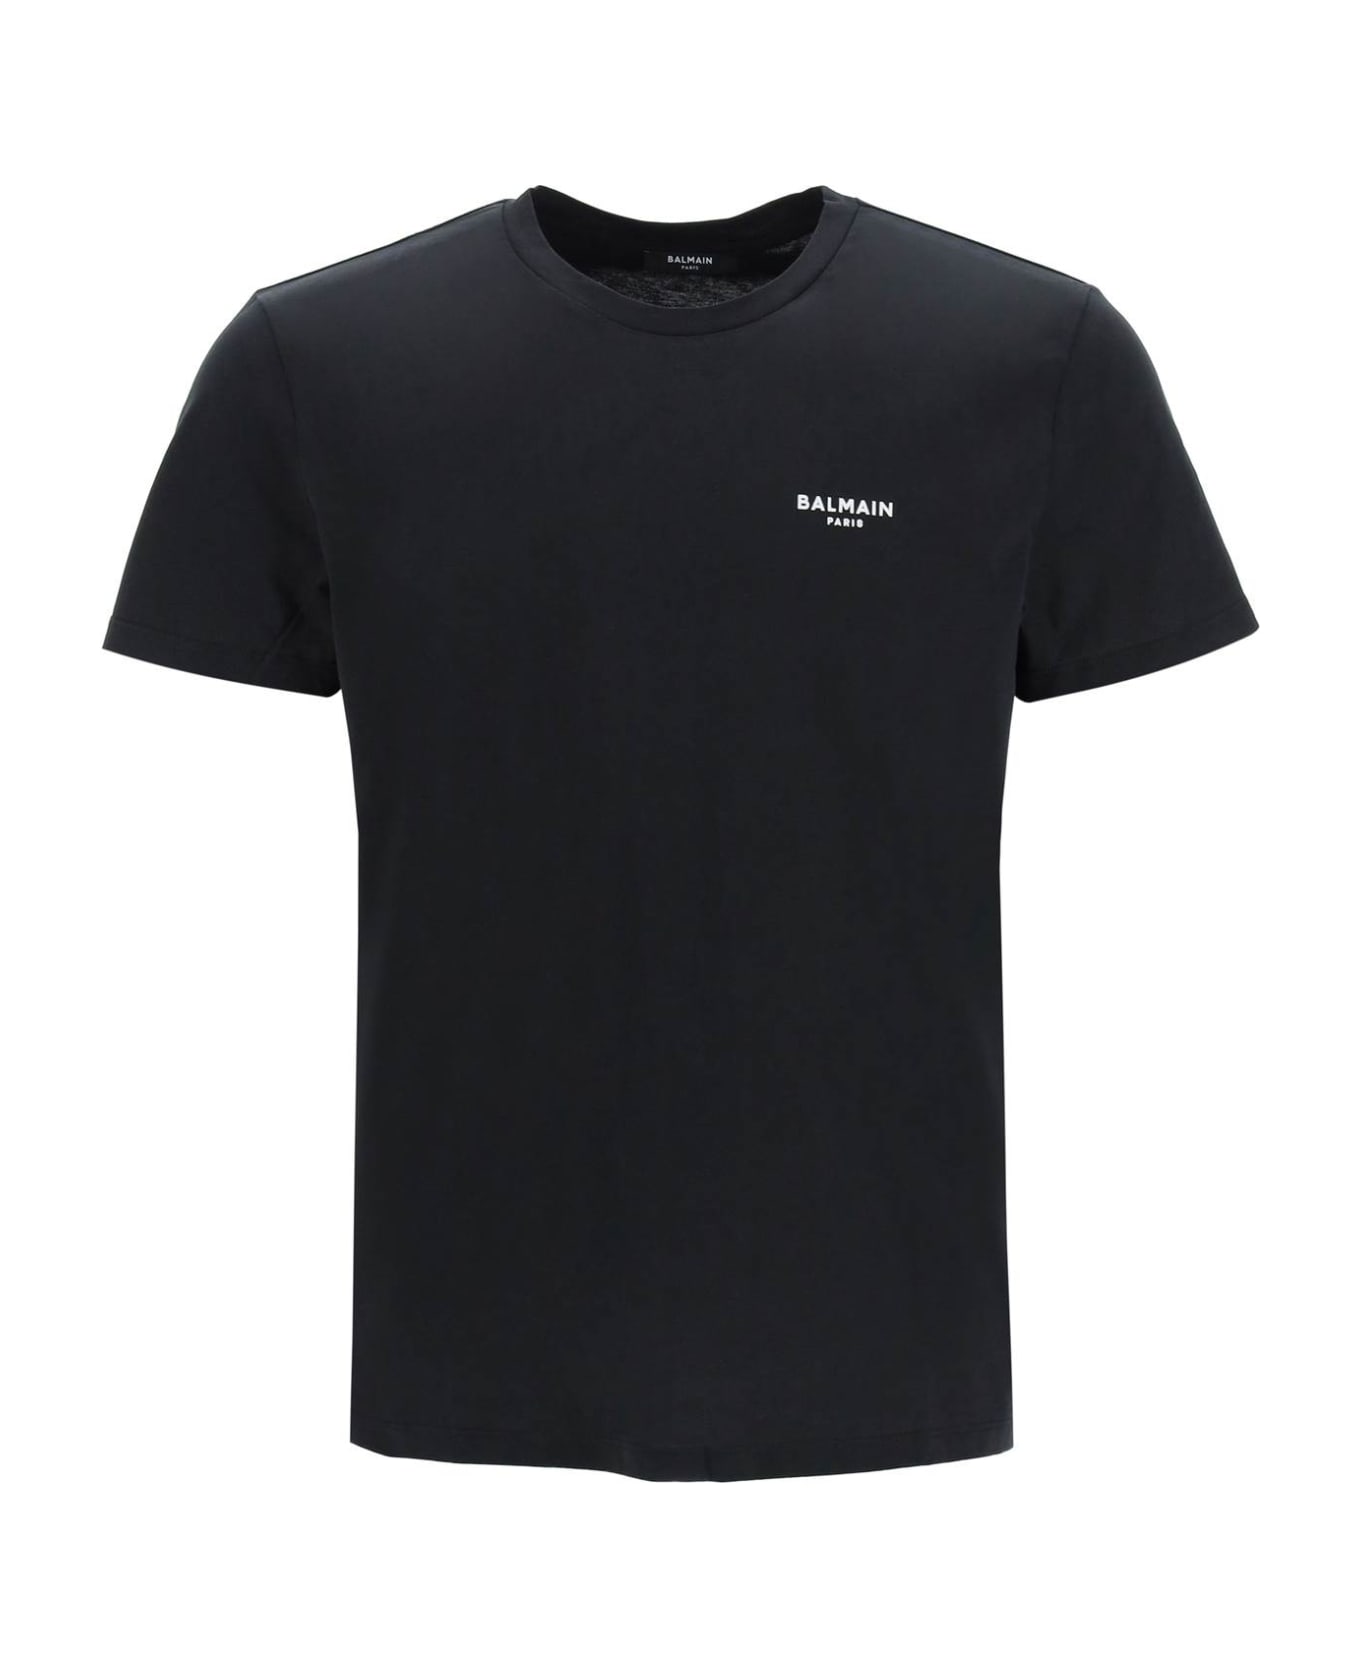 Balmain Black Cotton T-shirt - Eab Noir Blanc